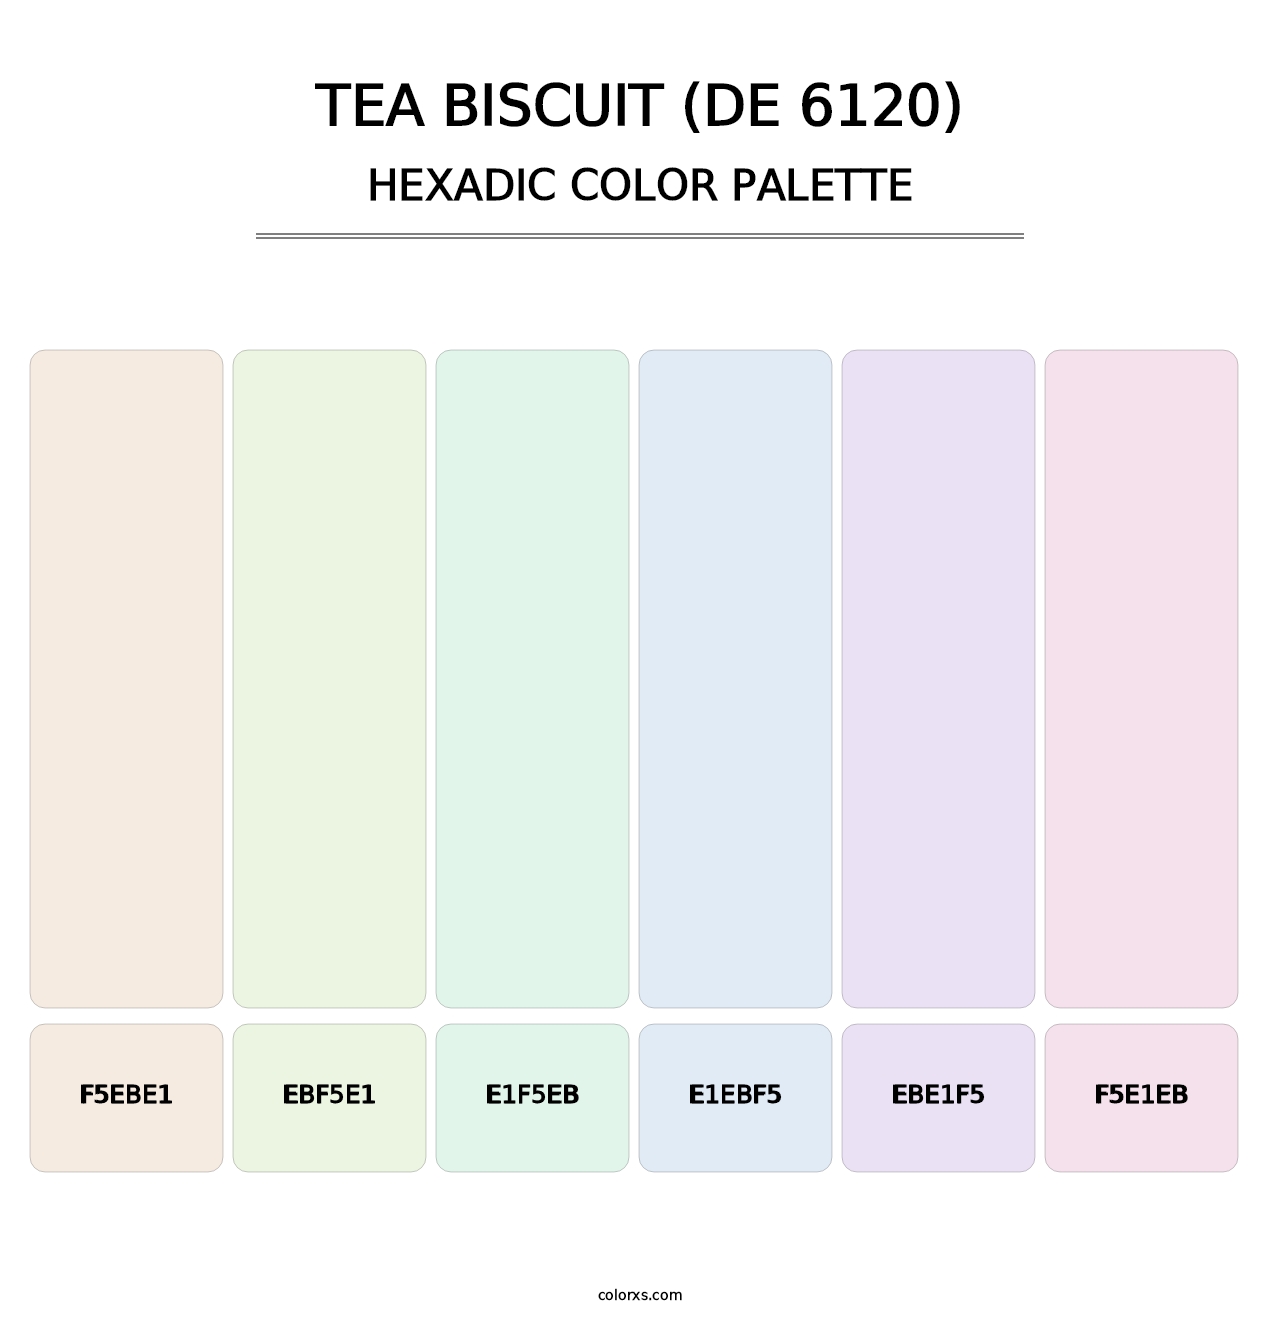 Tea Biscuit (DE 6120) - Hexadic Color Palette